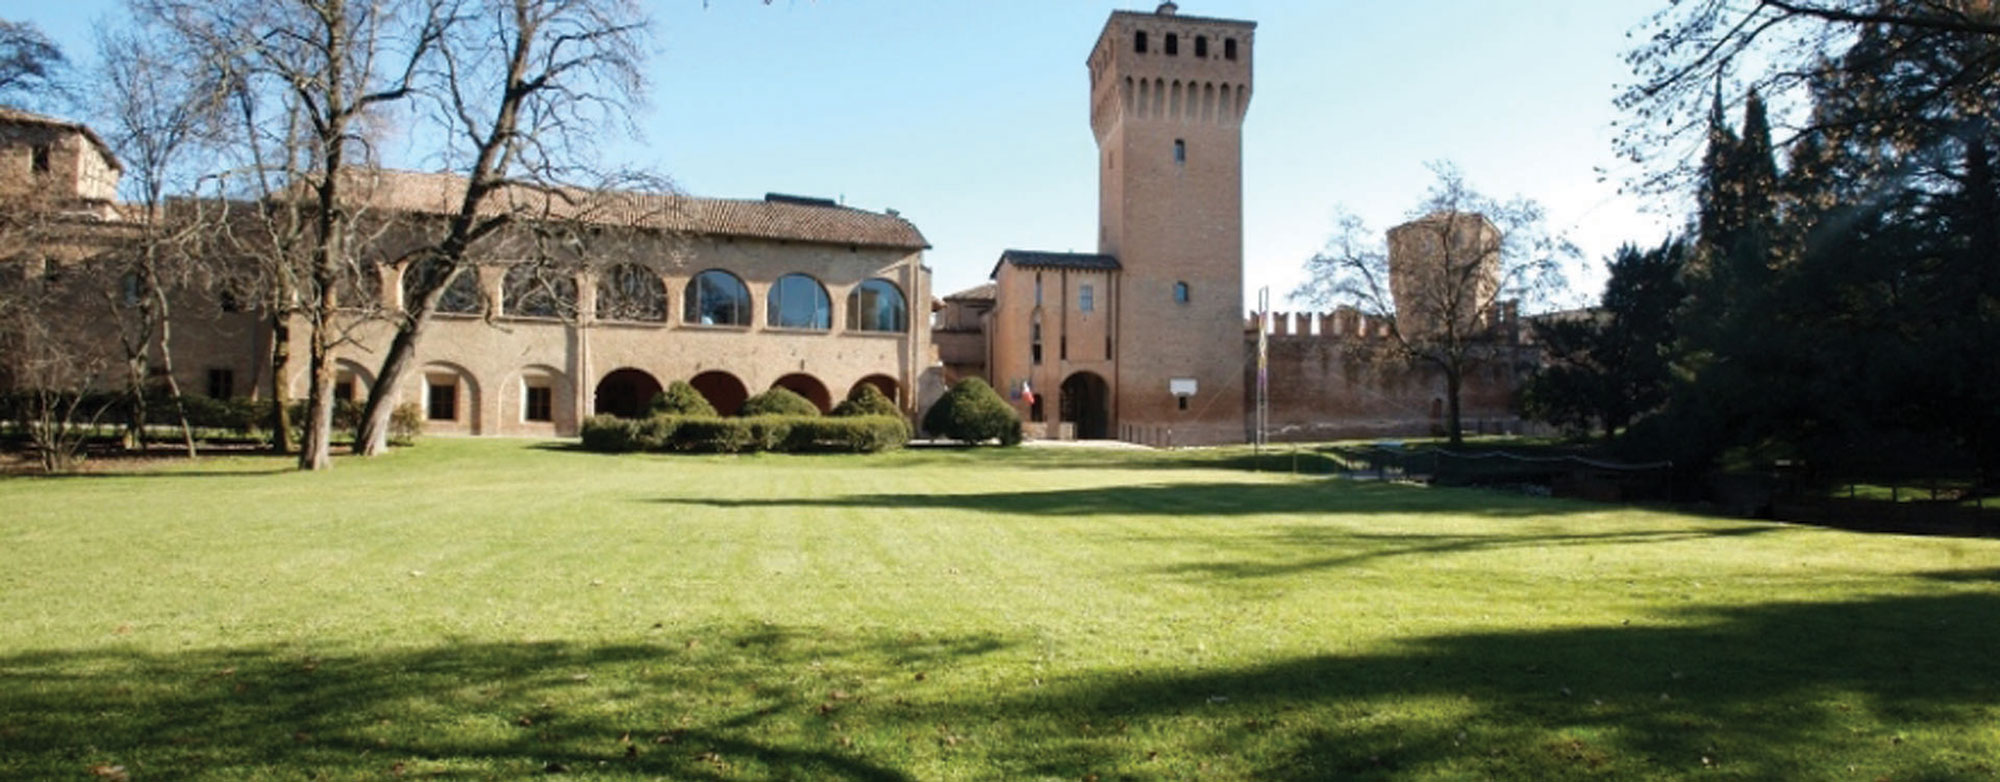 Castello-di-Formigine